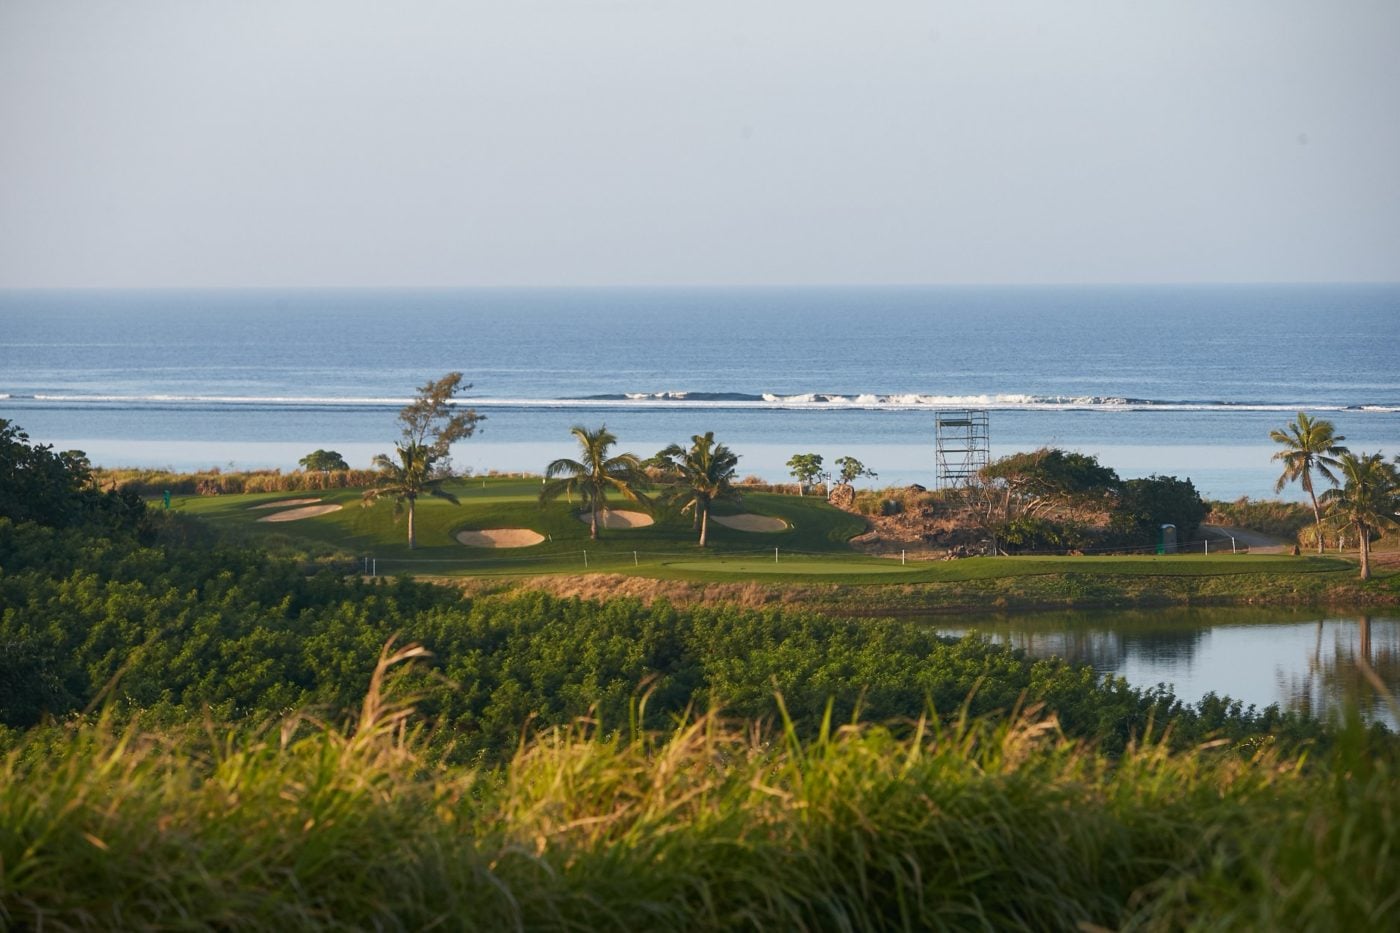 Pacific Ocean backdrop from Natadola Bay Golf Course